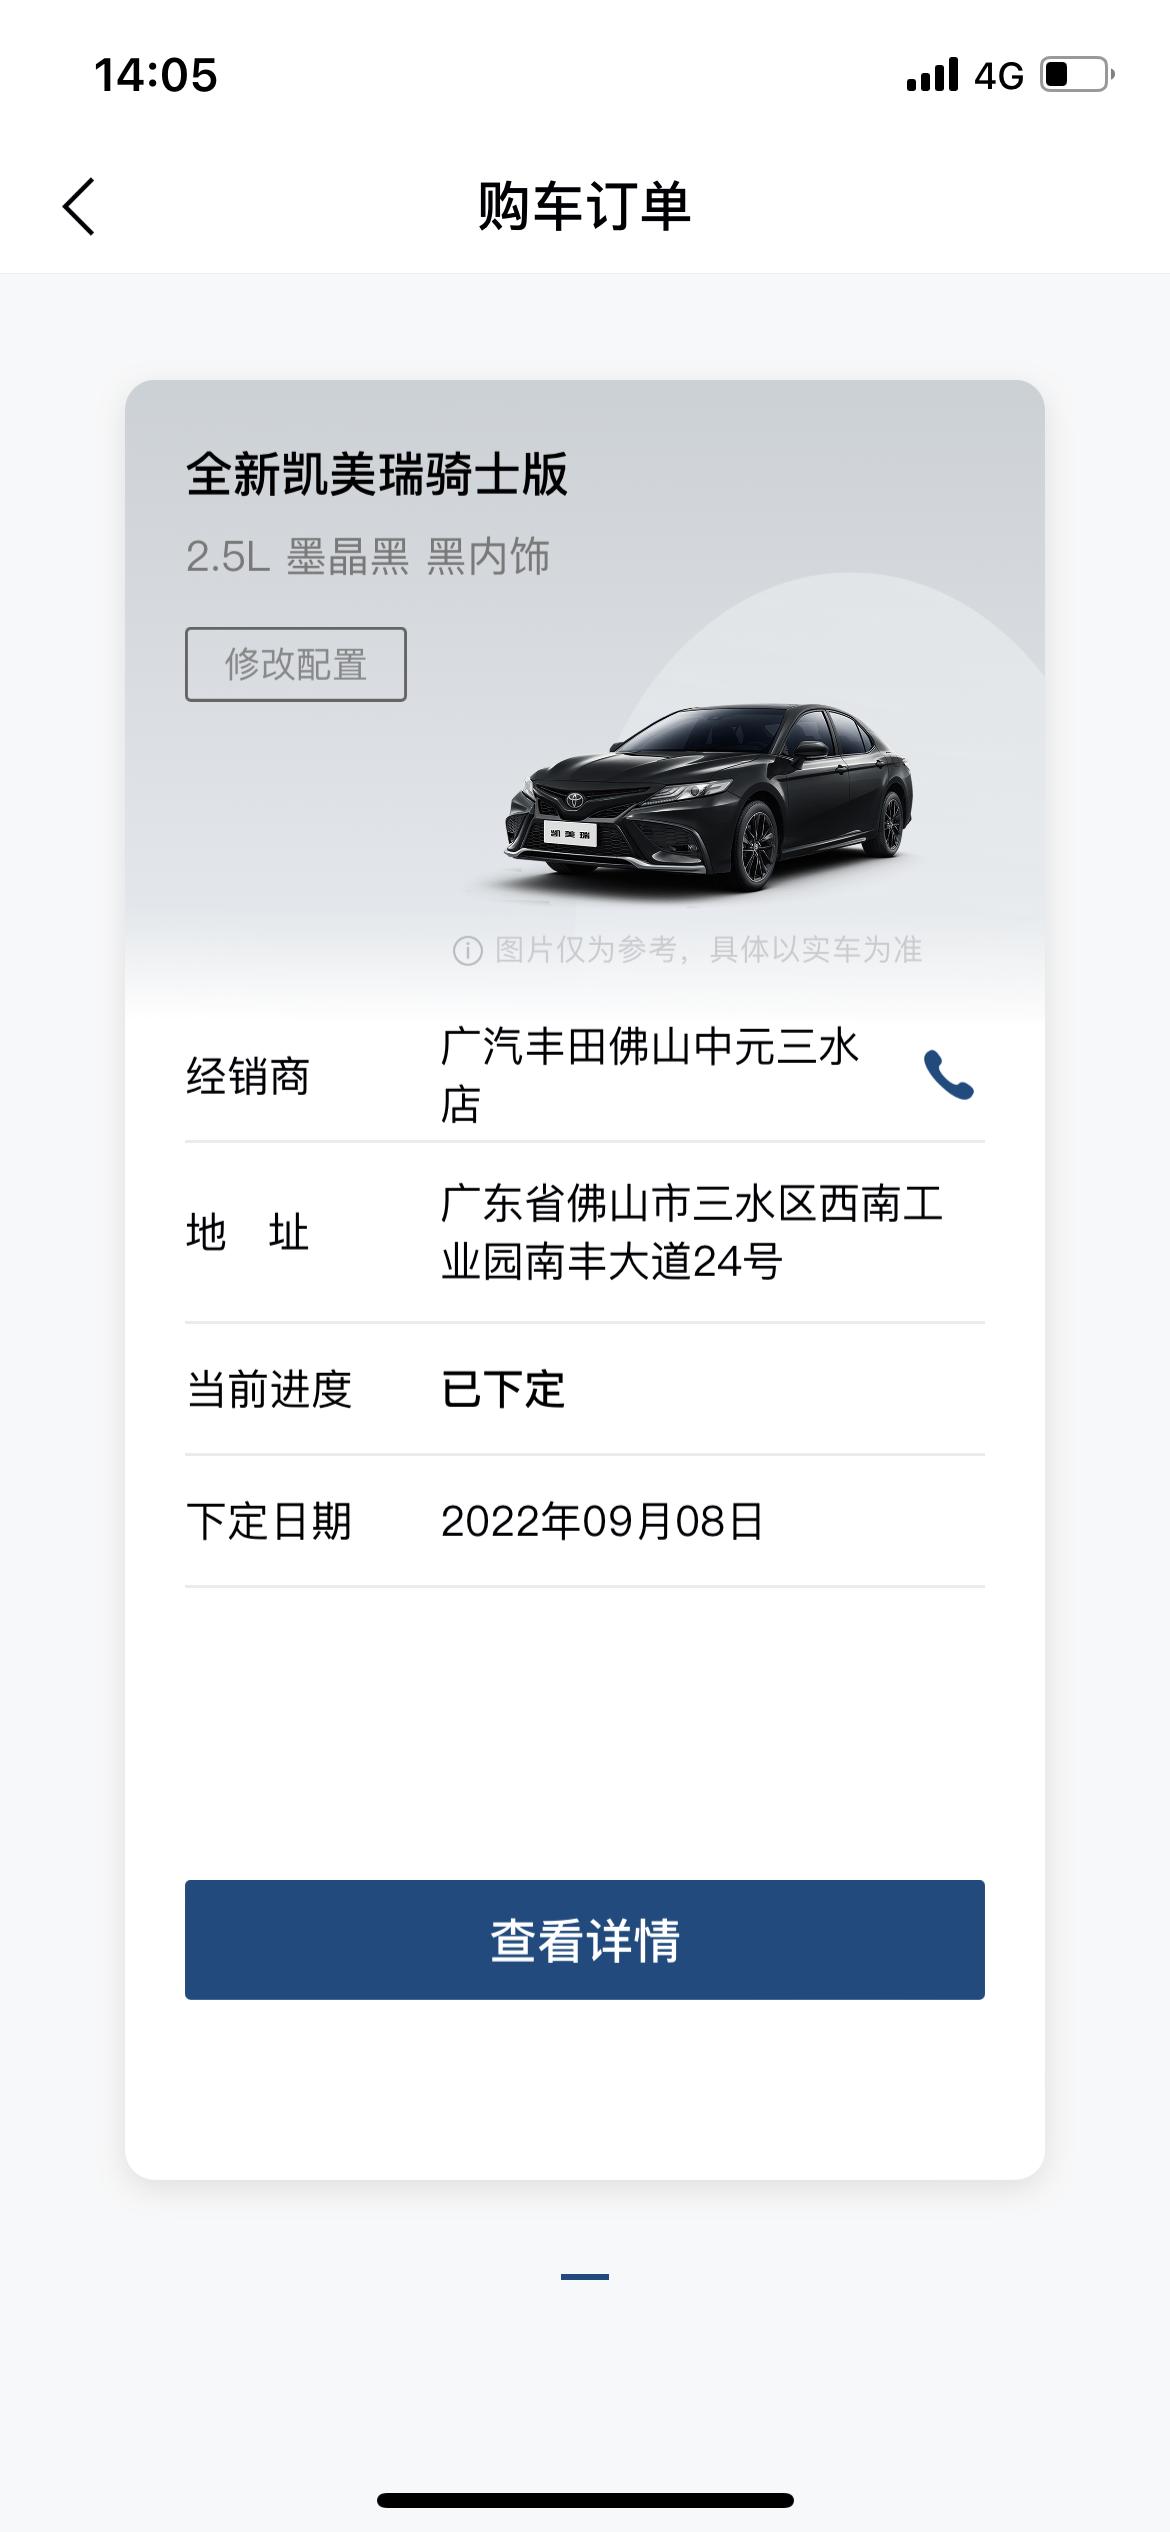 丰田凯美瑞 2.5骑士版黑色 落地223000贵吗在广东区域 送了1000块的油卡销售说要10月月中才有车